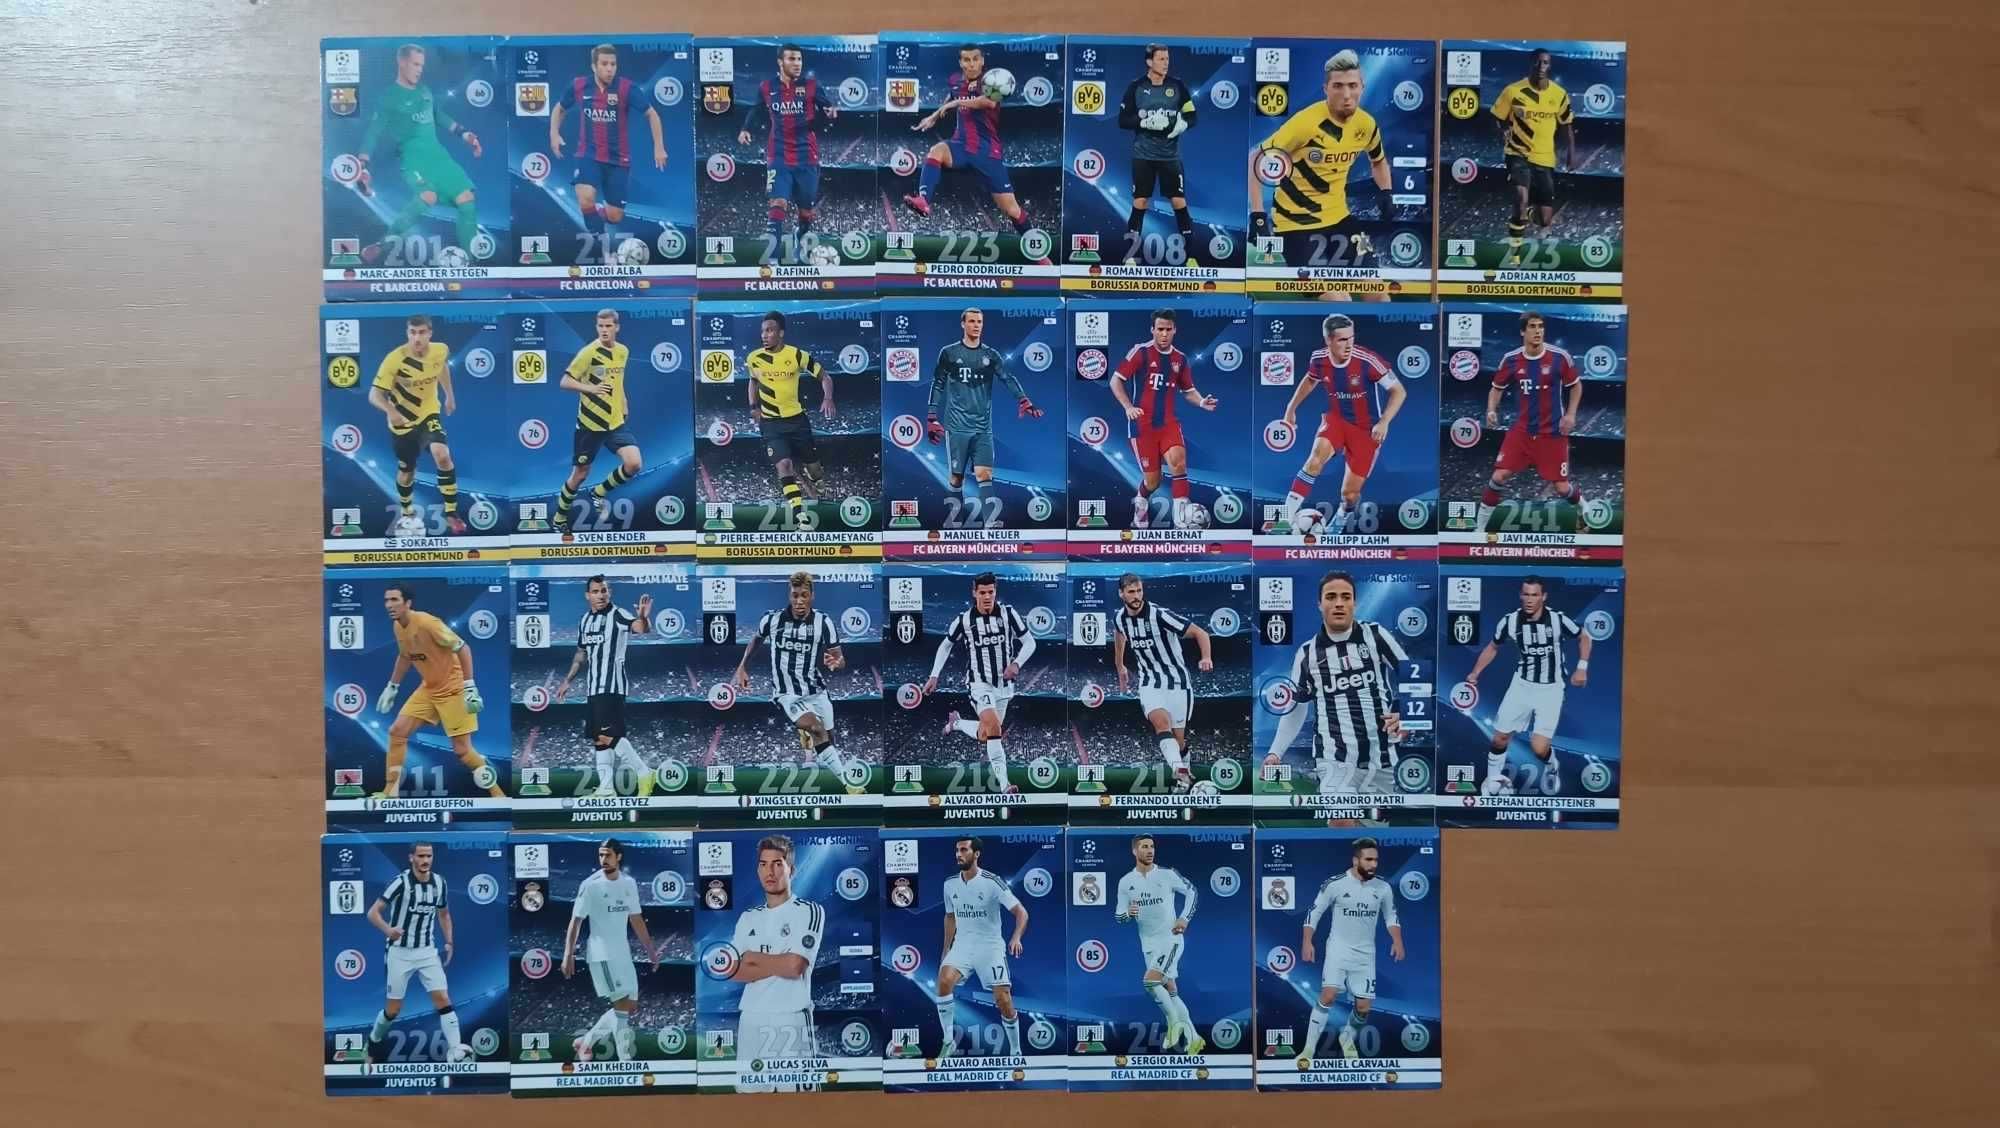 Karty XL Adrenalyn UEFA CL 2014/15 [193 karty] - do negocjacji